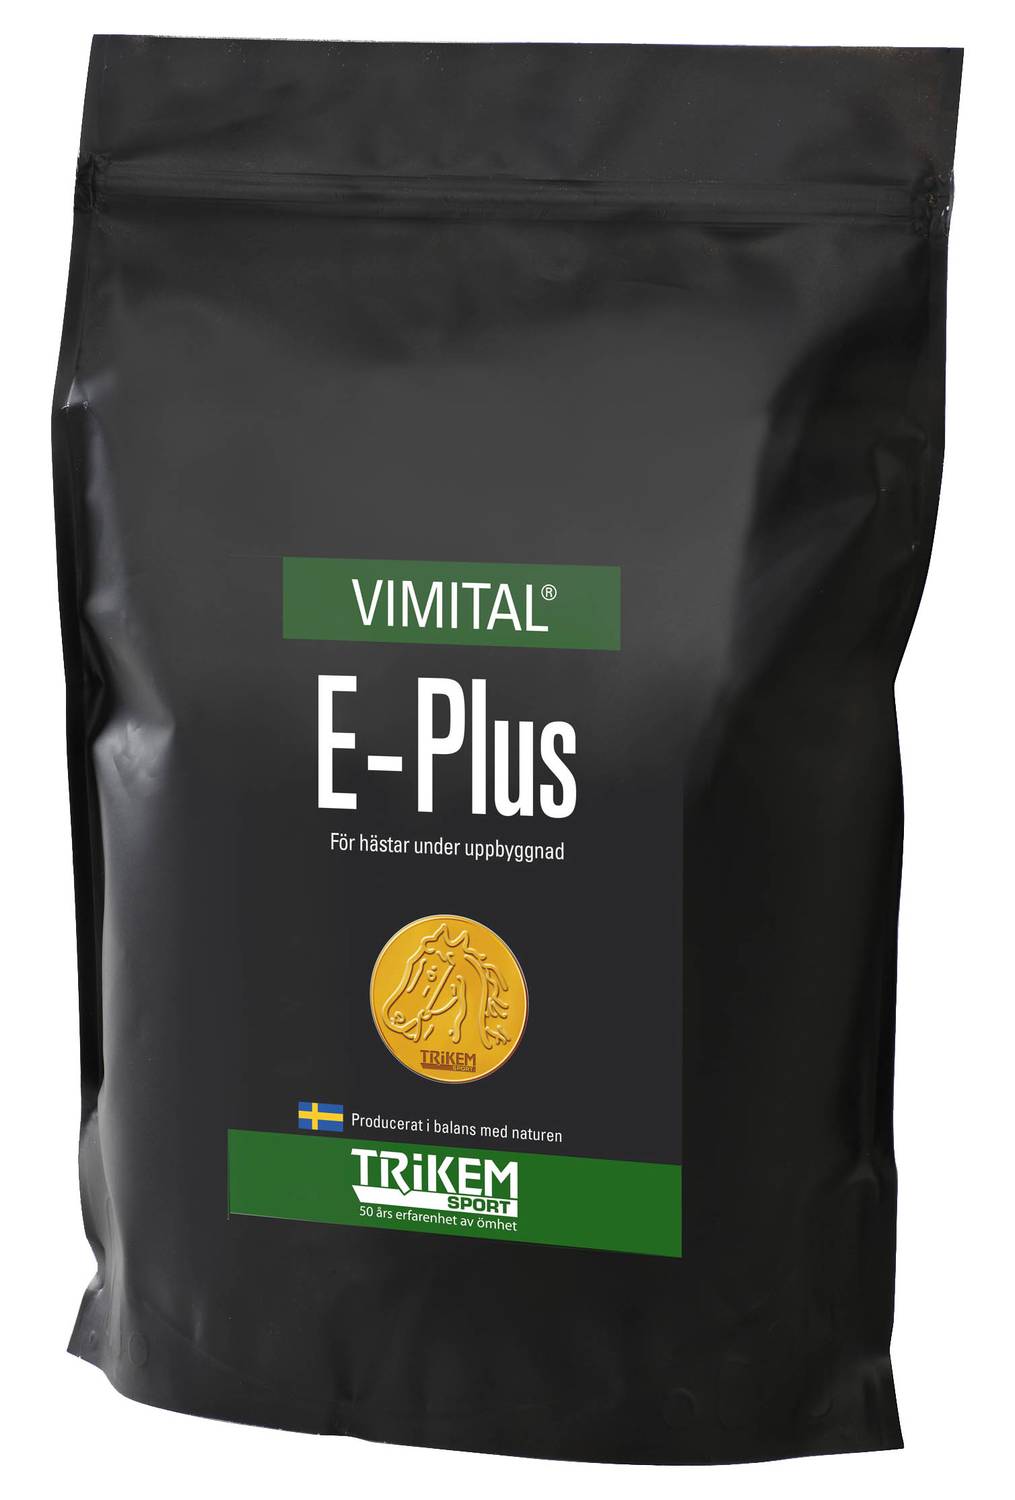 Vimital E-Plus